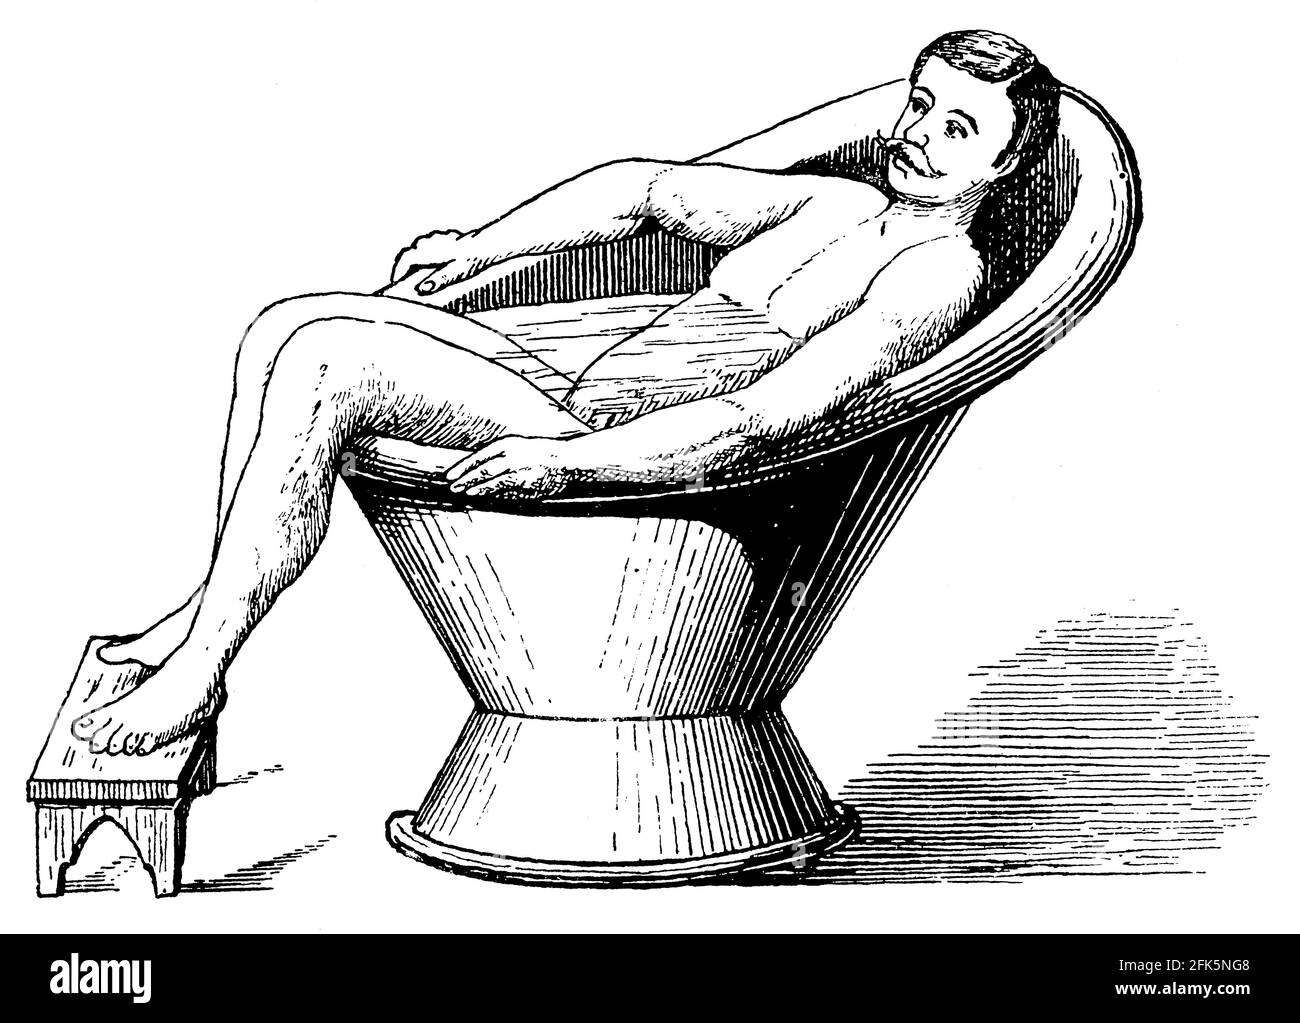 Salle de bains. Illustration du 19e siècle. Allemagne. Arrière-plan blanc. Banque D'Images